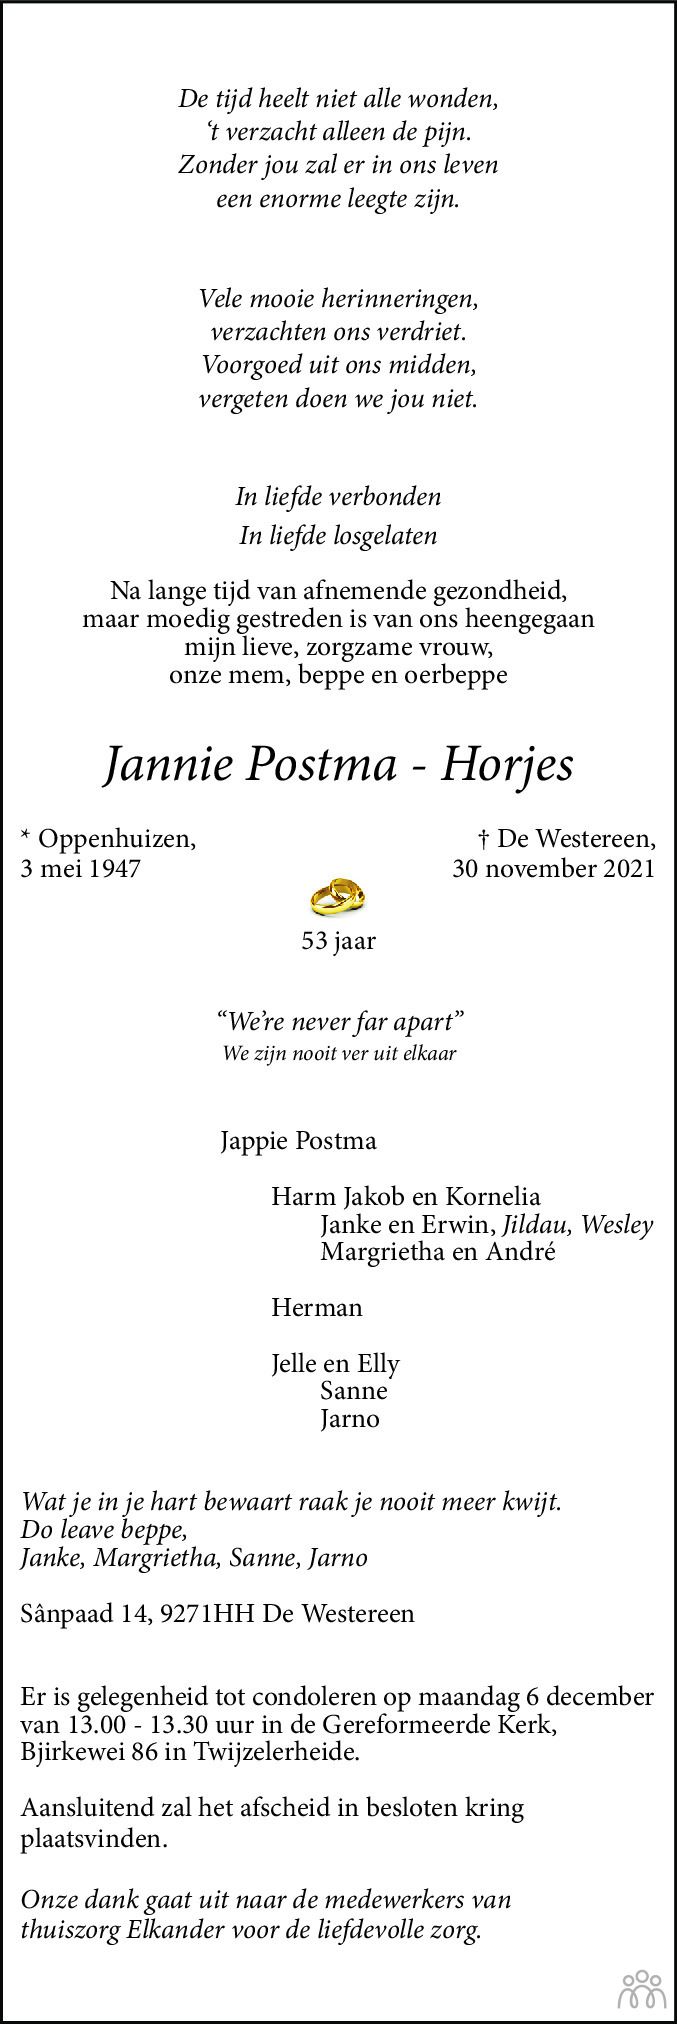 Overlijdensbericht van Jannie Postma-Horjes in Leeuwarder Courant